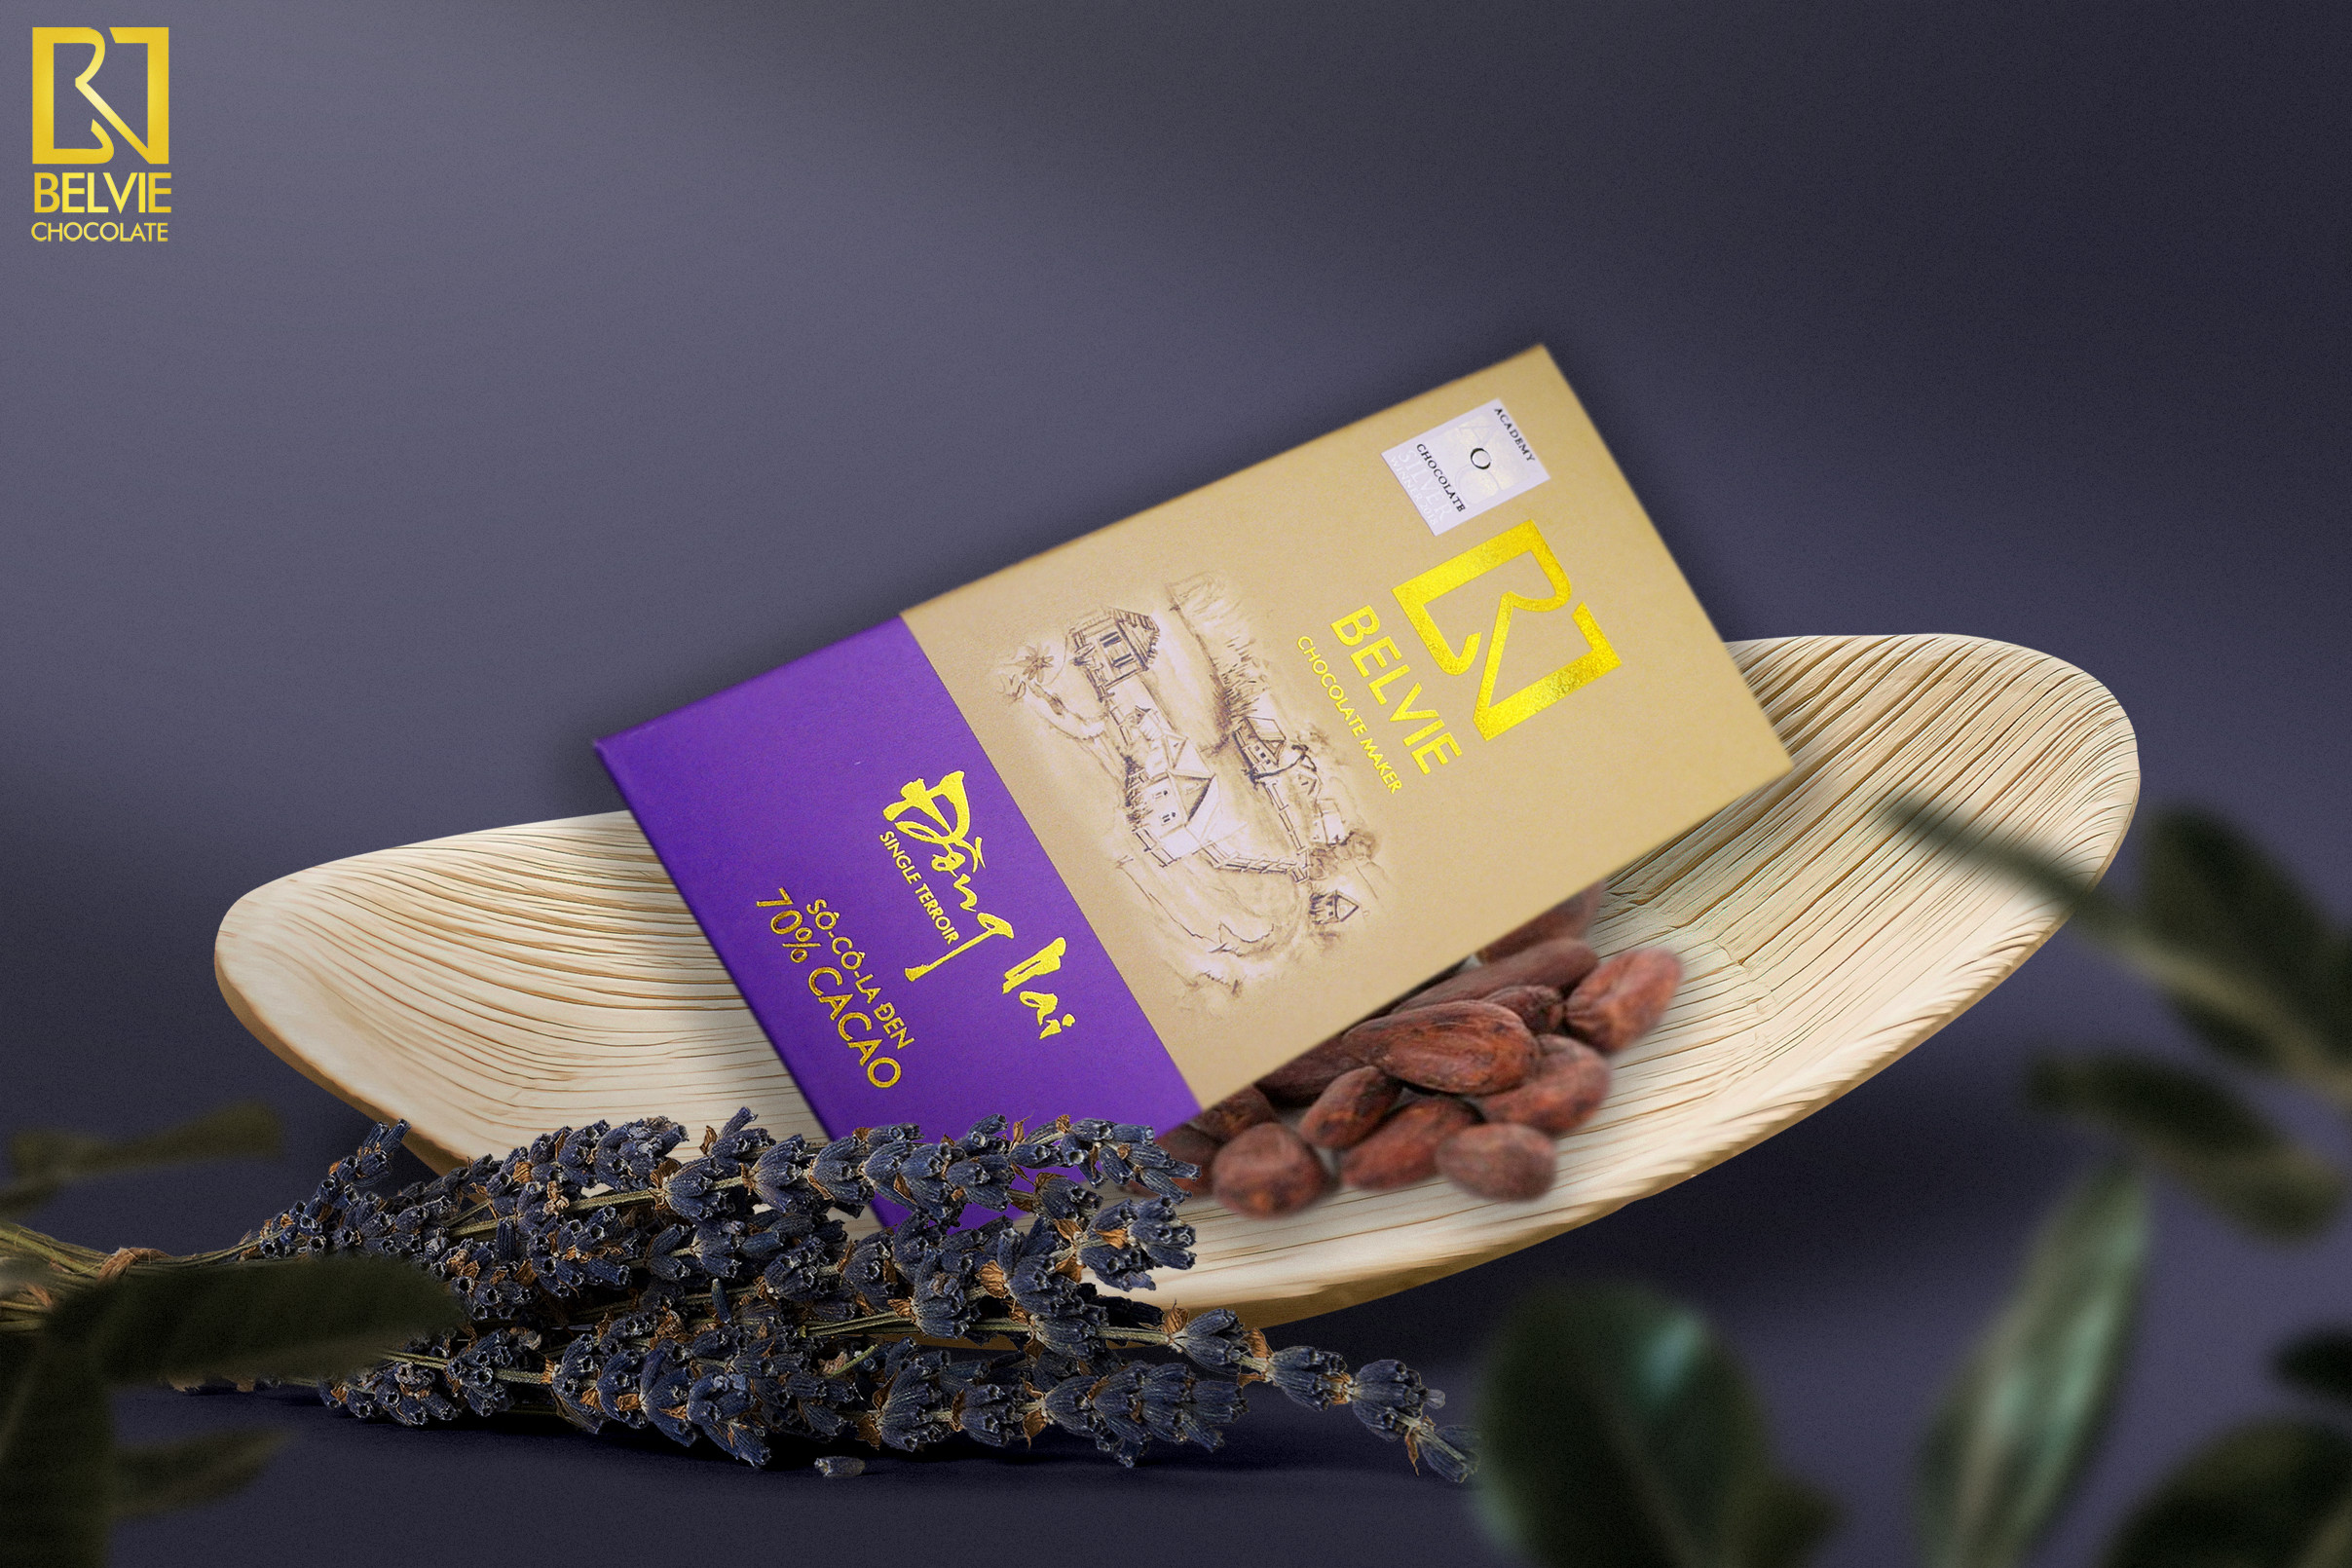 Socola Đen Belvie Đồng Nai 70% Cacao Belvie-DN80 (80g)